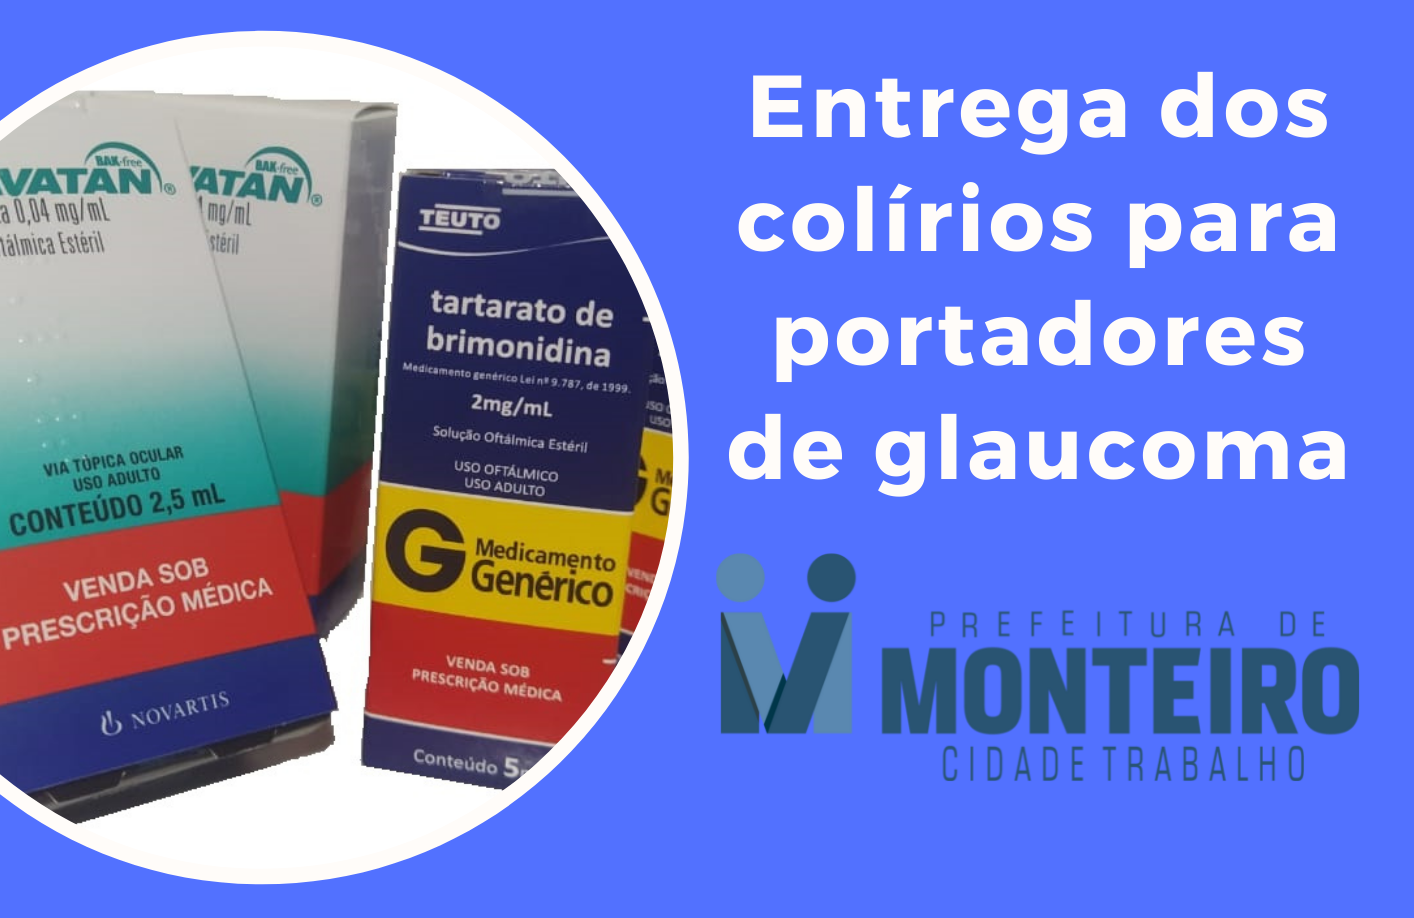 1 Prefeitura de Monteiro continua garantindo colírios para pacientes com Glaucoma